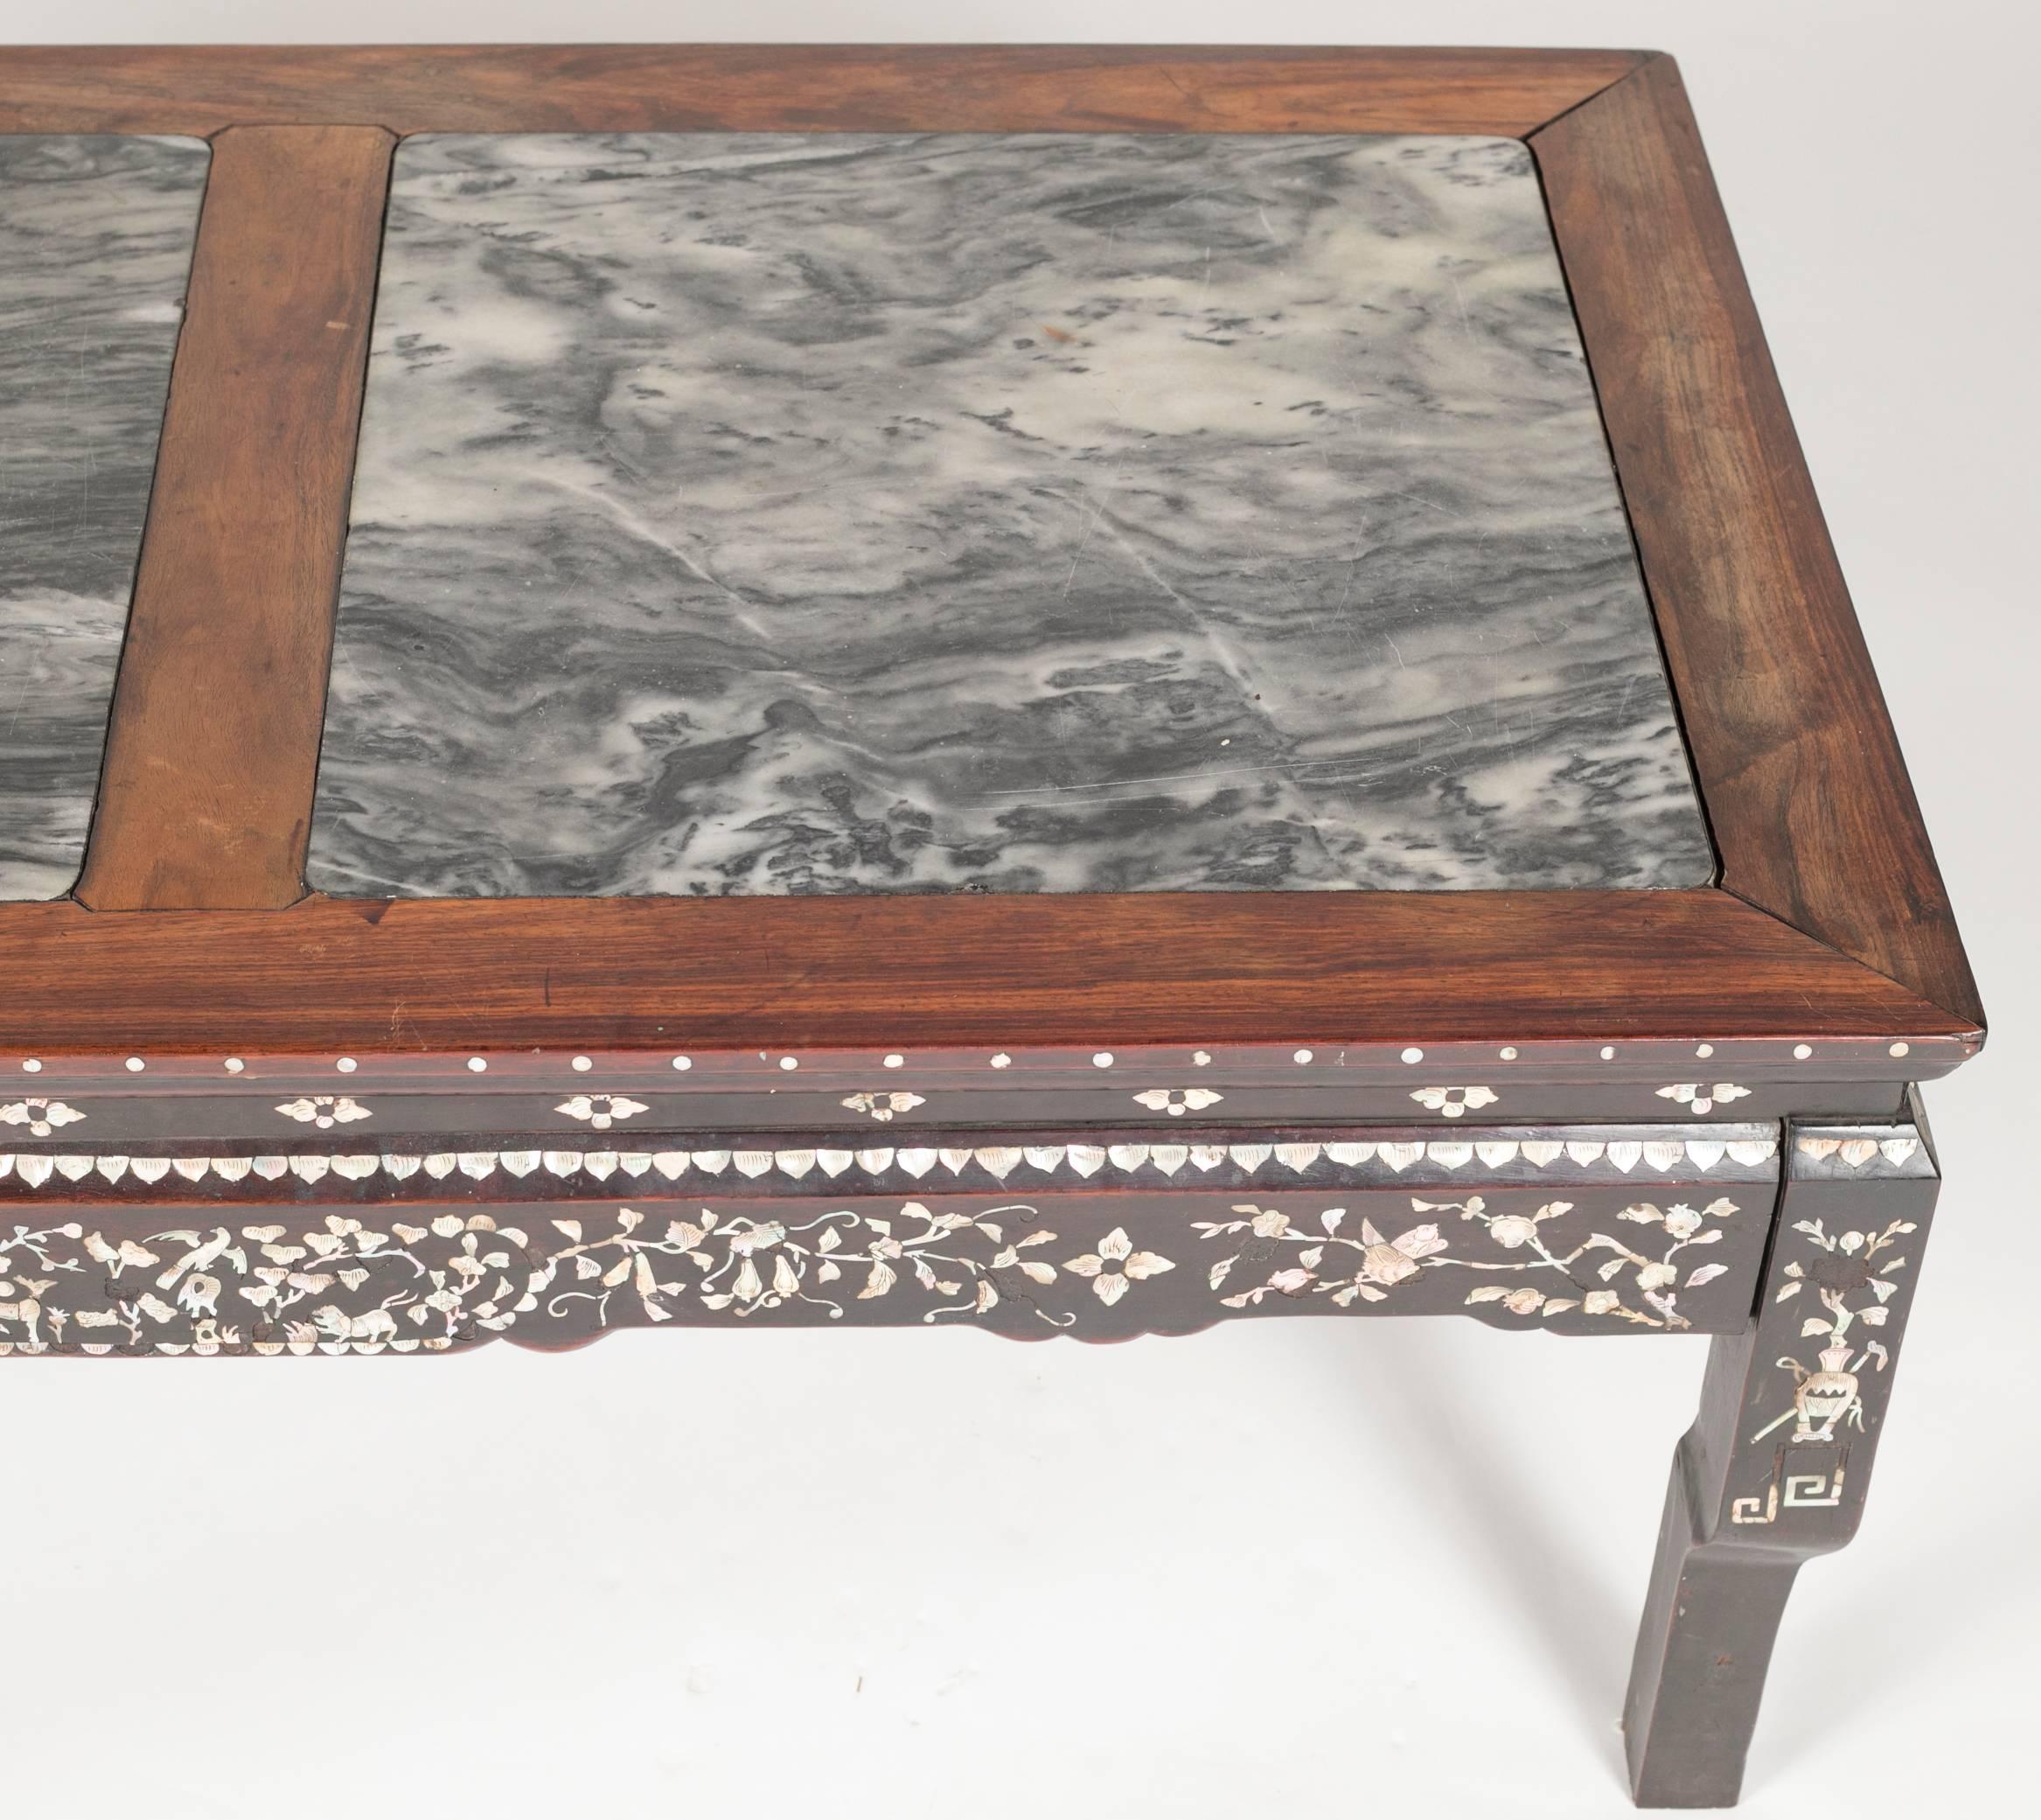 Chinesischer niedriger Tisch mit Marmorplatten aus dem 19. Jahrhundert (Perlmutt)